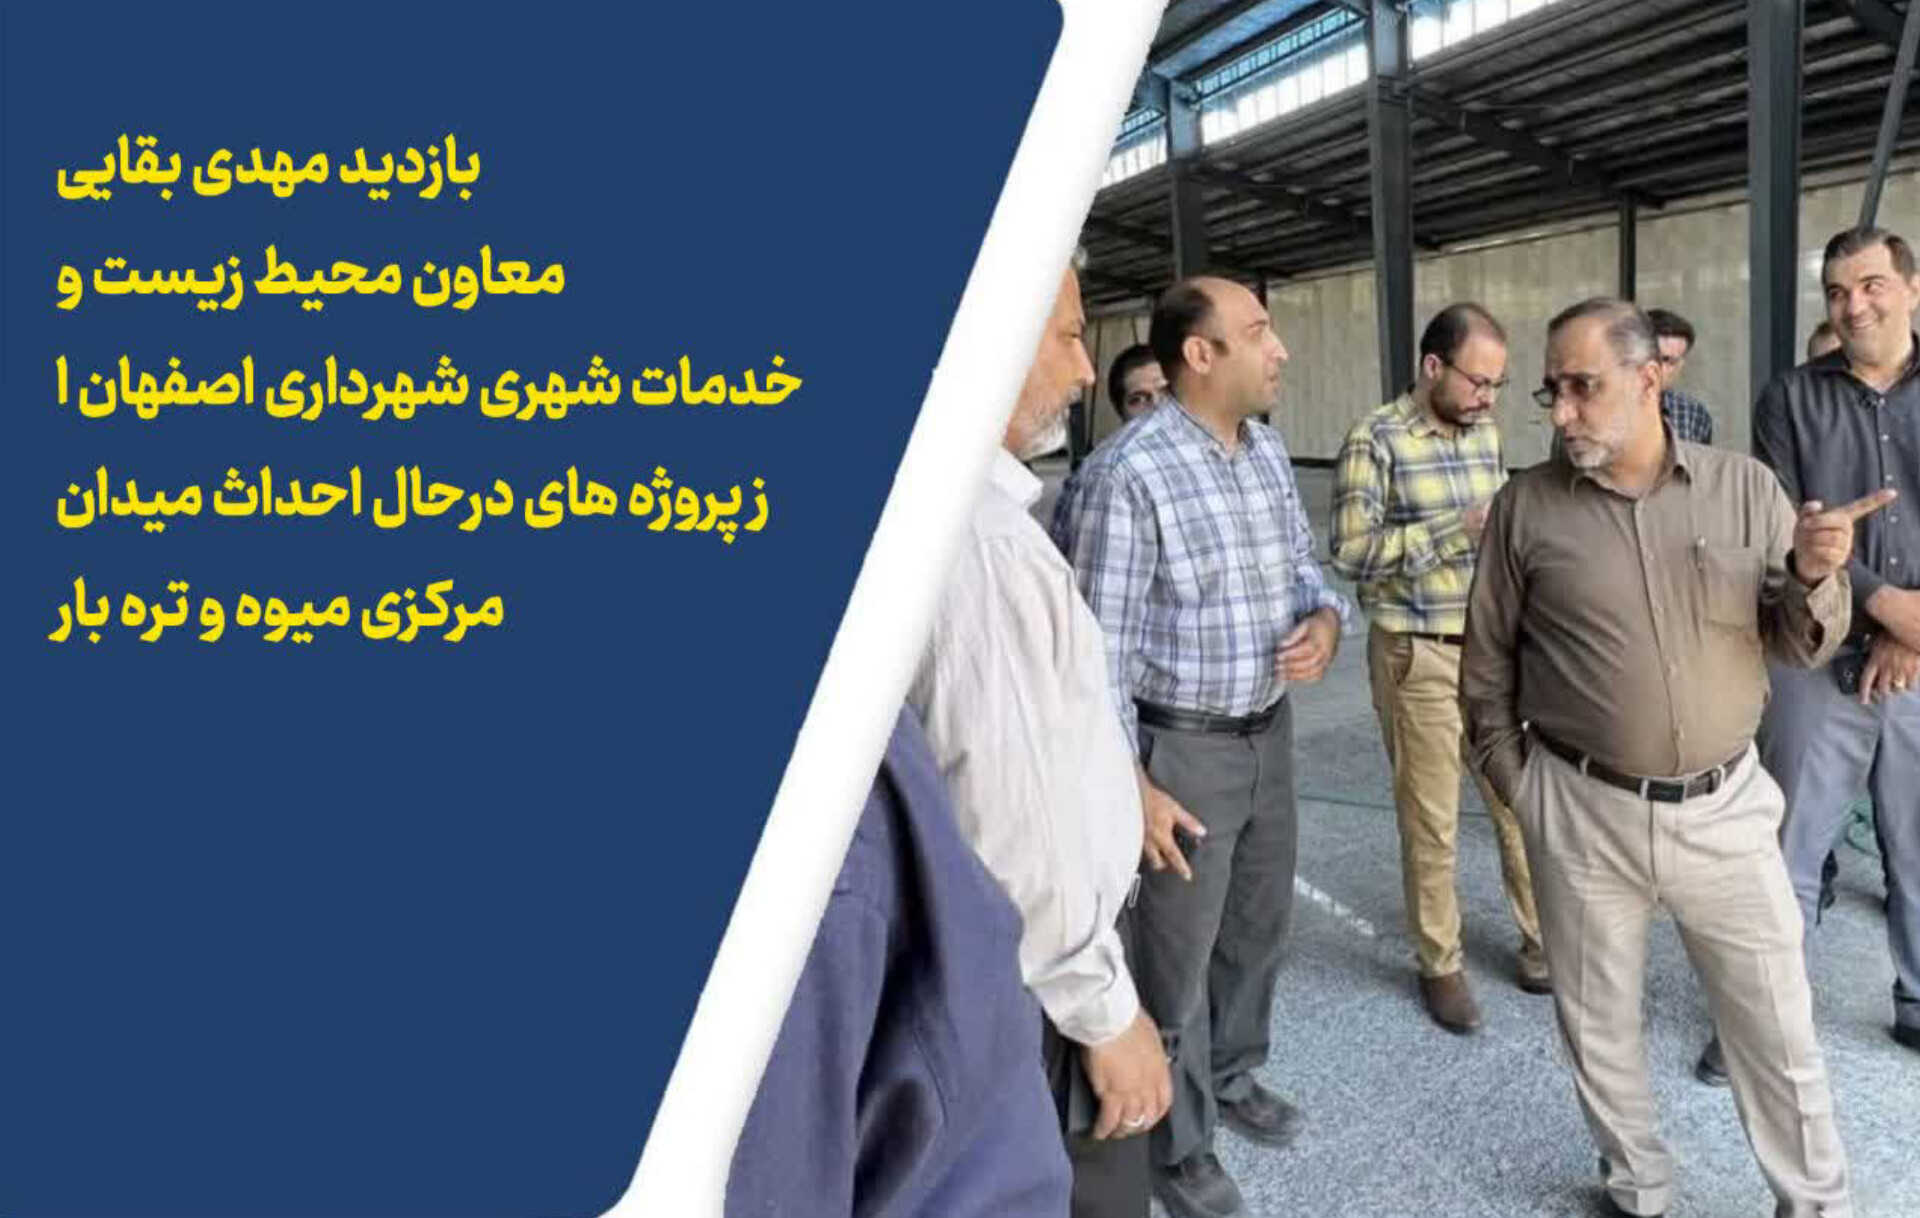 بازدیدمعاون محیط زیست و خدمات شهری شهردار اصفهان از پروژه های در حال احداث